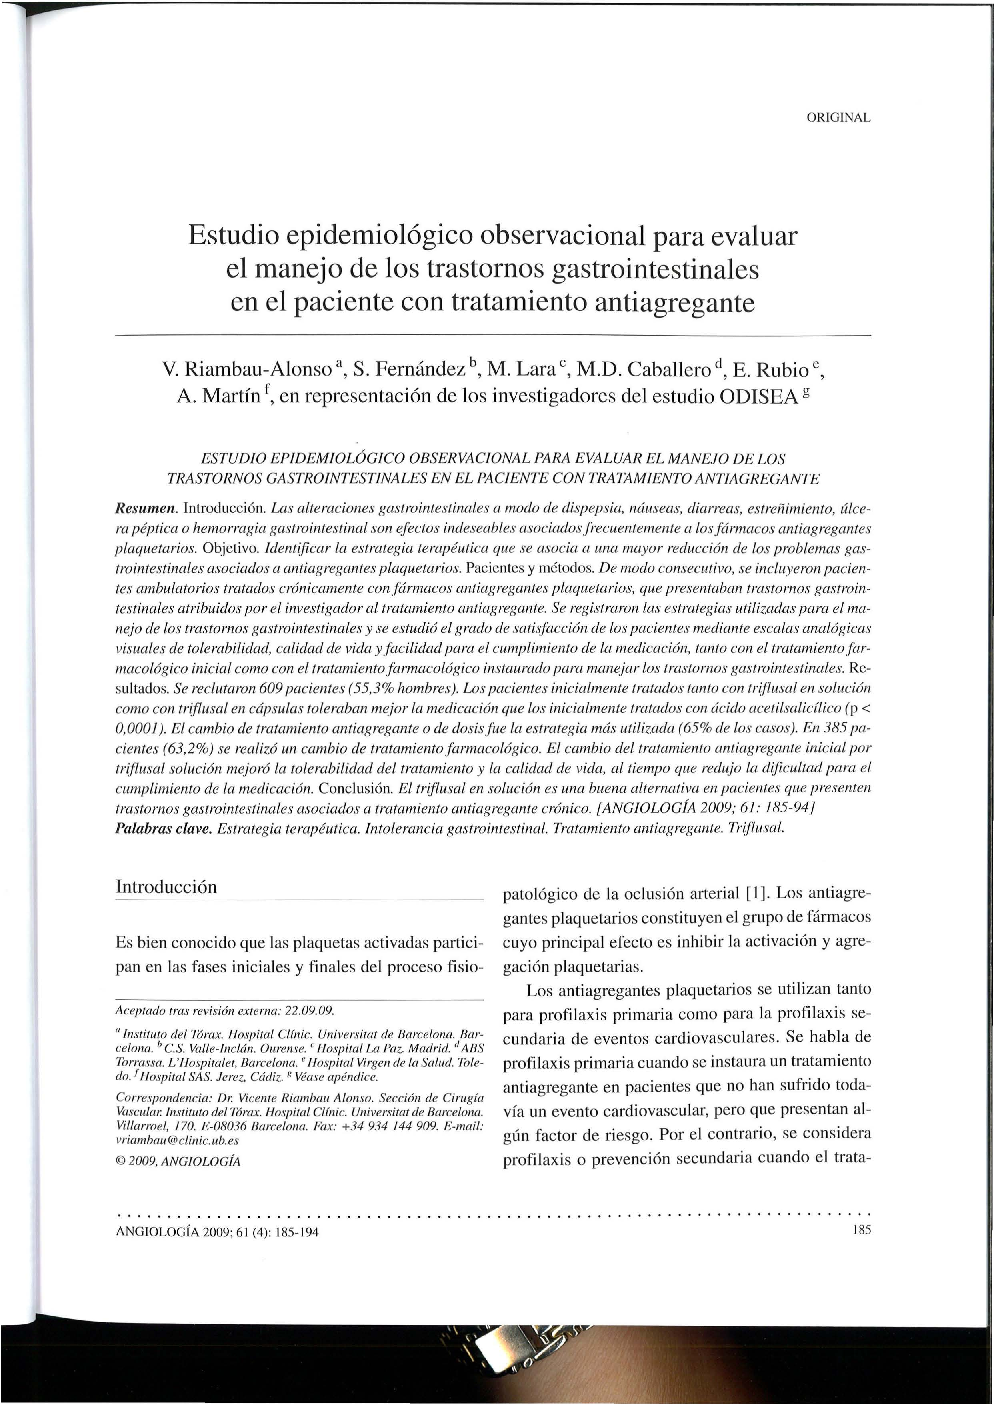 Estudio epidemiológico observacional para evaluar el manejo de los trastornos gastrointestinales en el paciente con tratamiento antiagregante